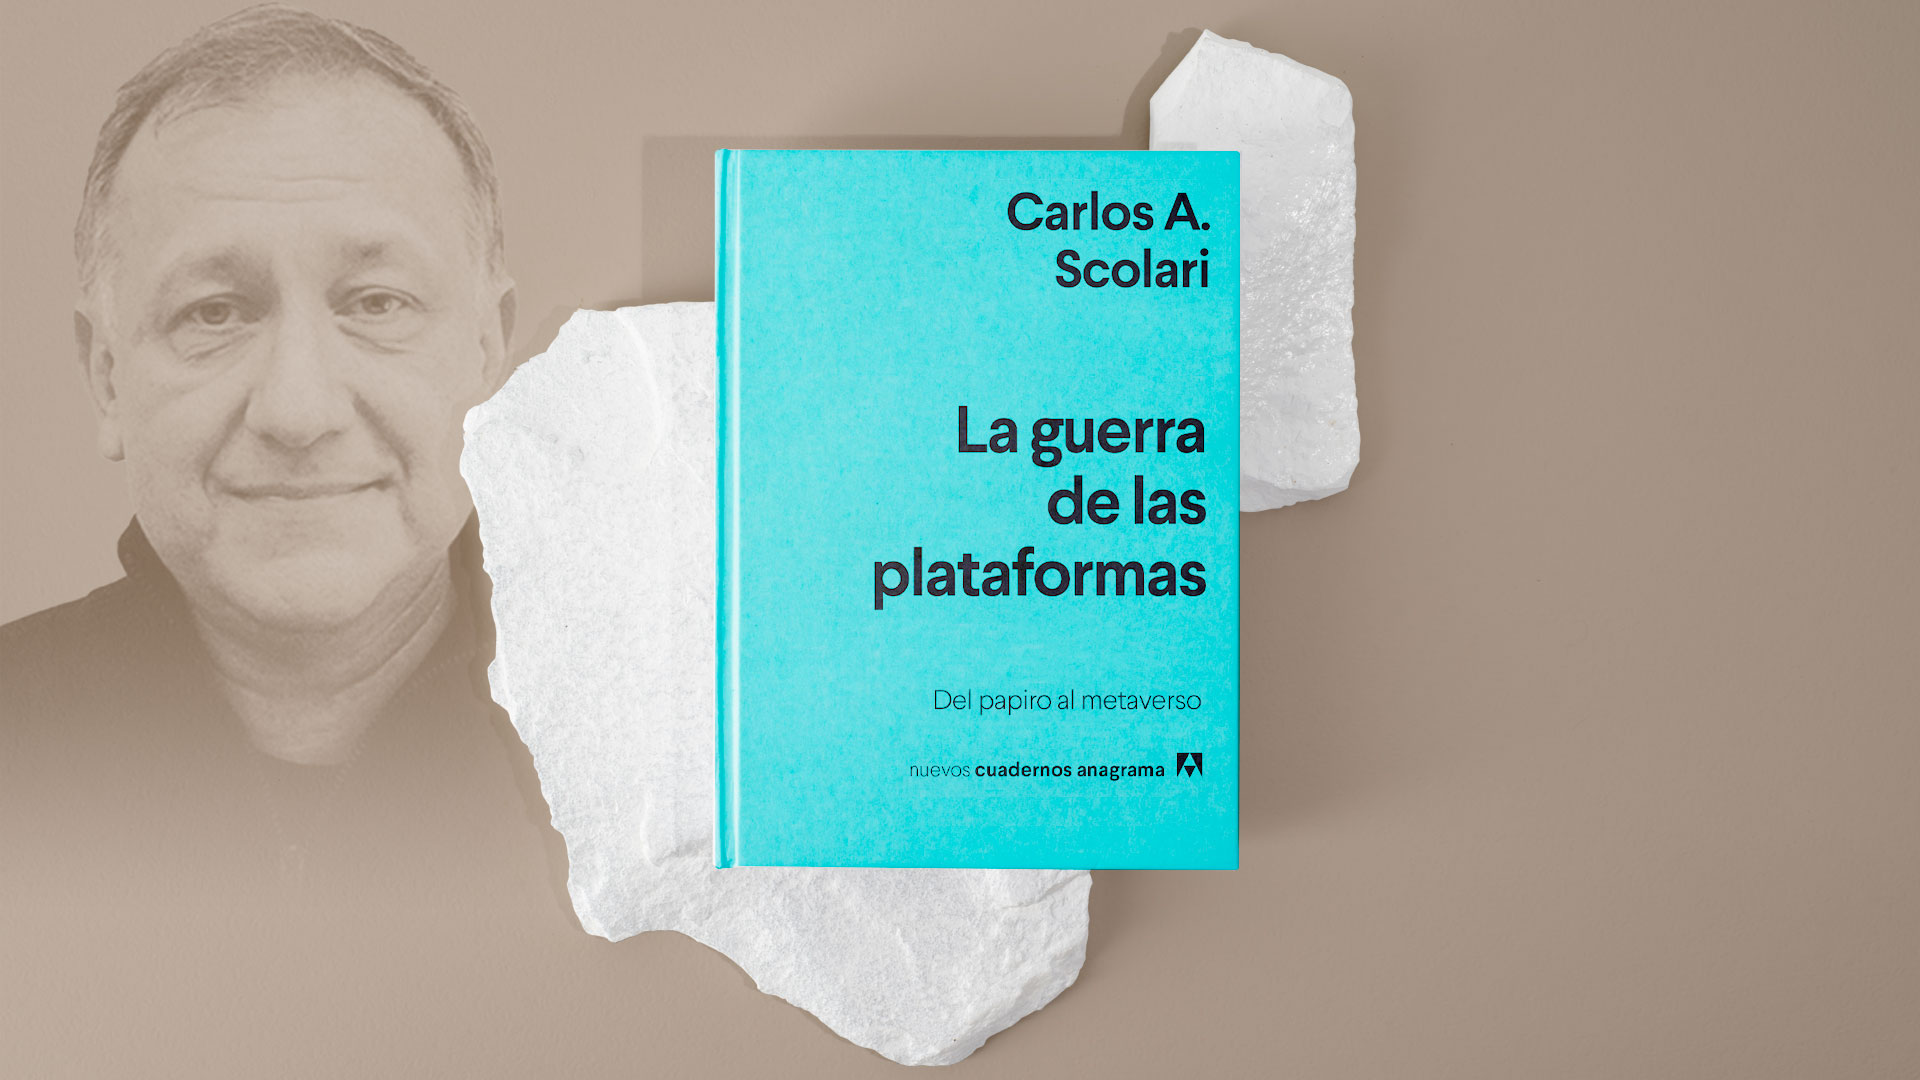 Carlos Scolari presenta "La guerra de las plataformas". Diseño a partir de imágenes: Jesús Avilés/Infobae.